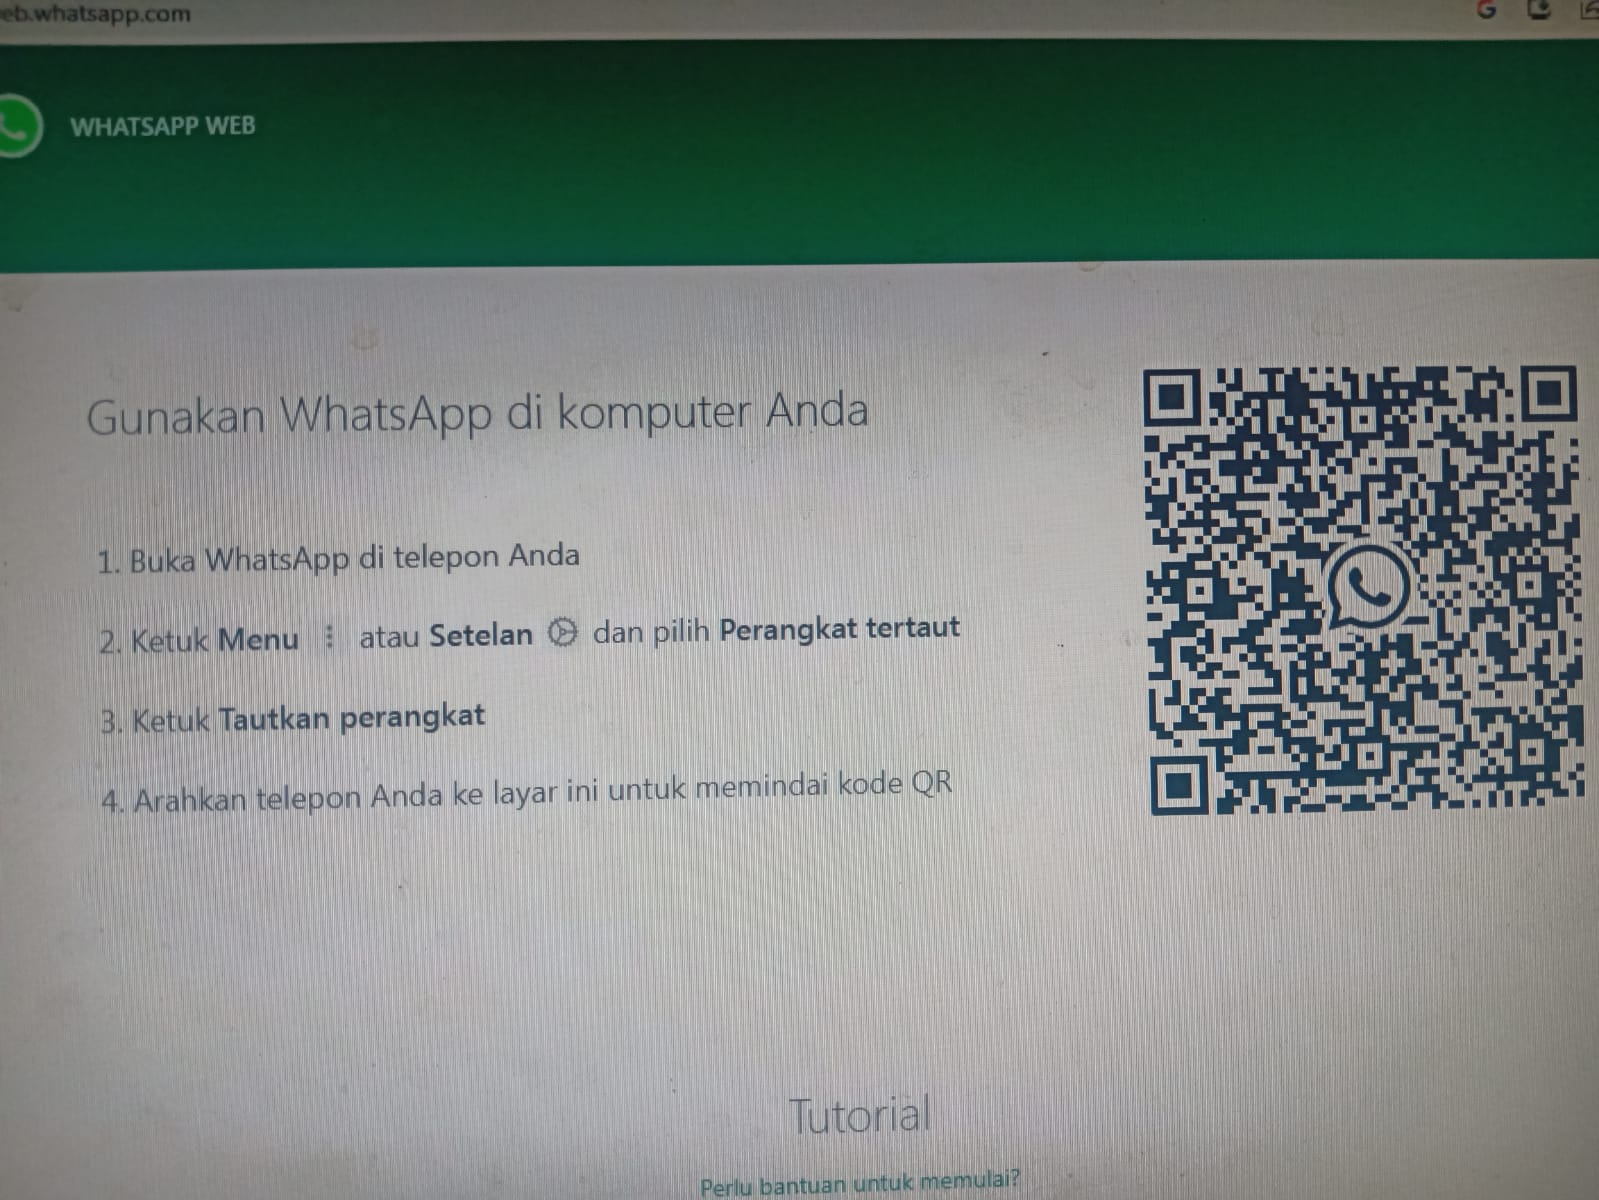 Login WA WEB Alias Whatsapp Web Nggak Bisa Dibuka di PC Komputer